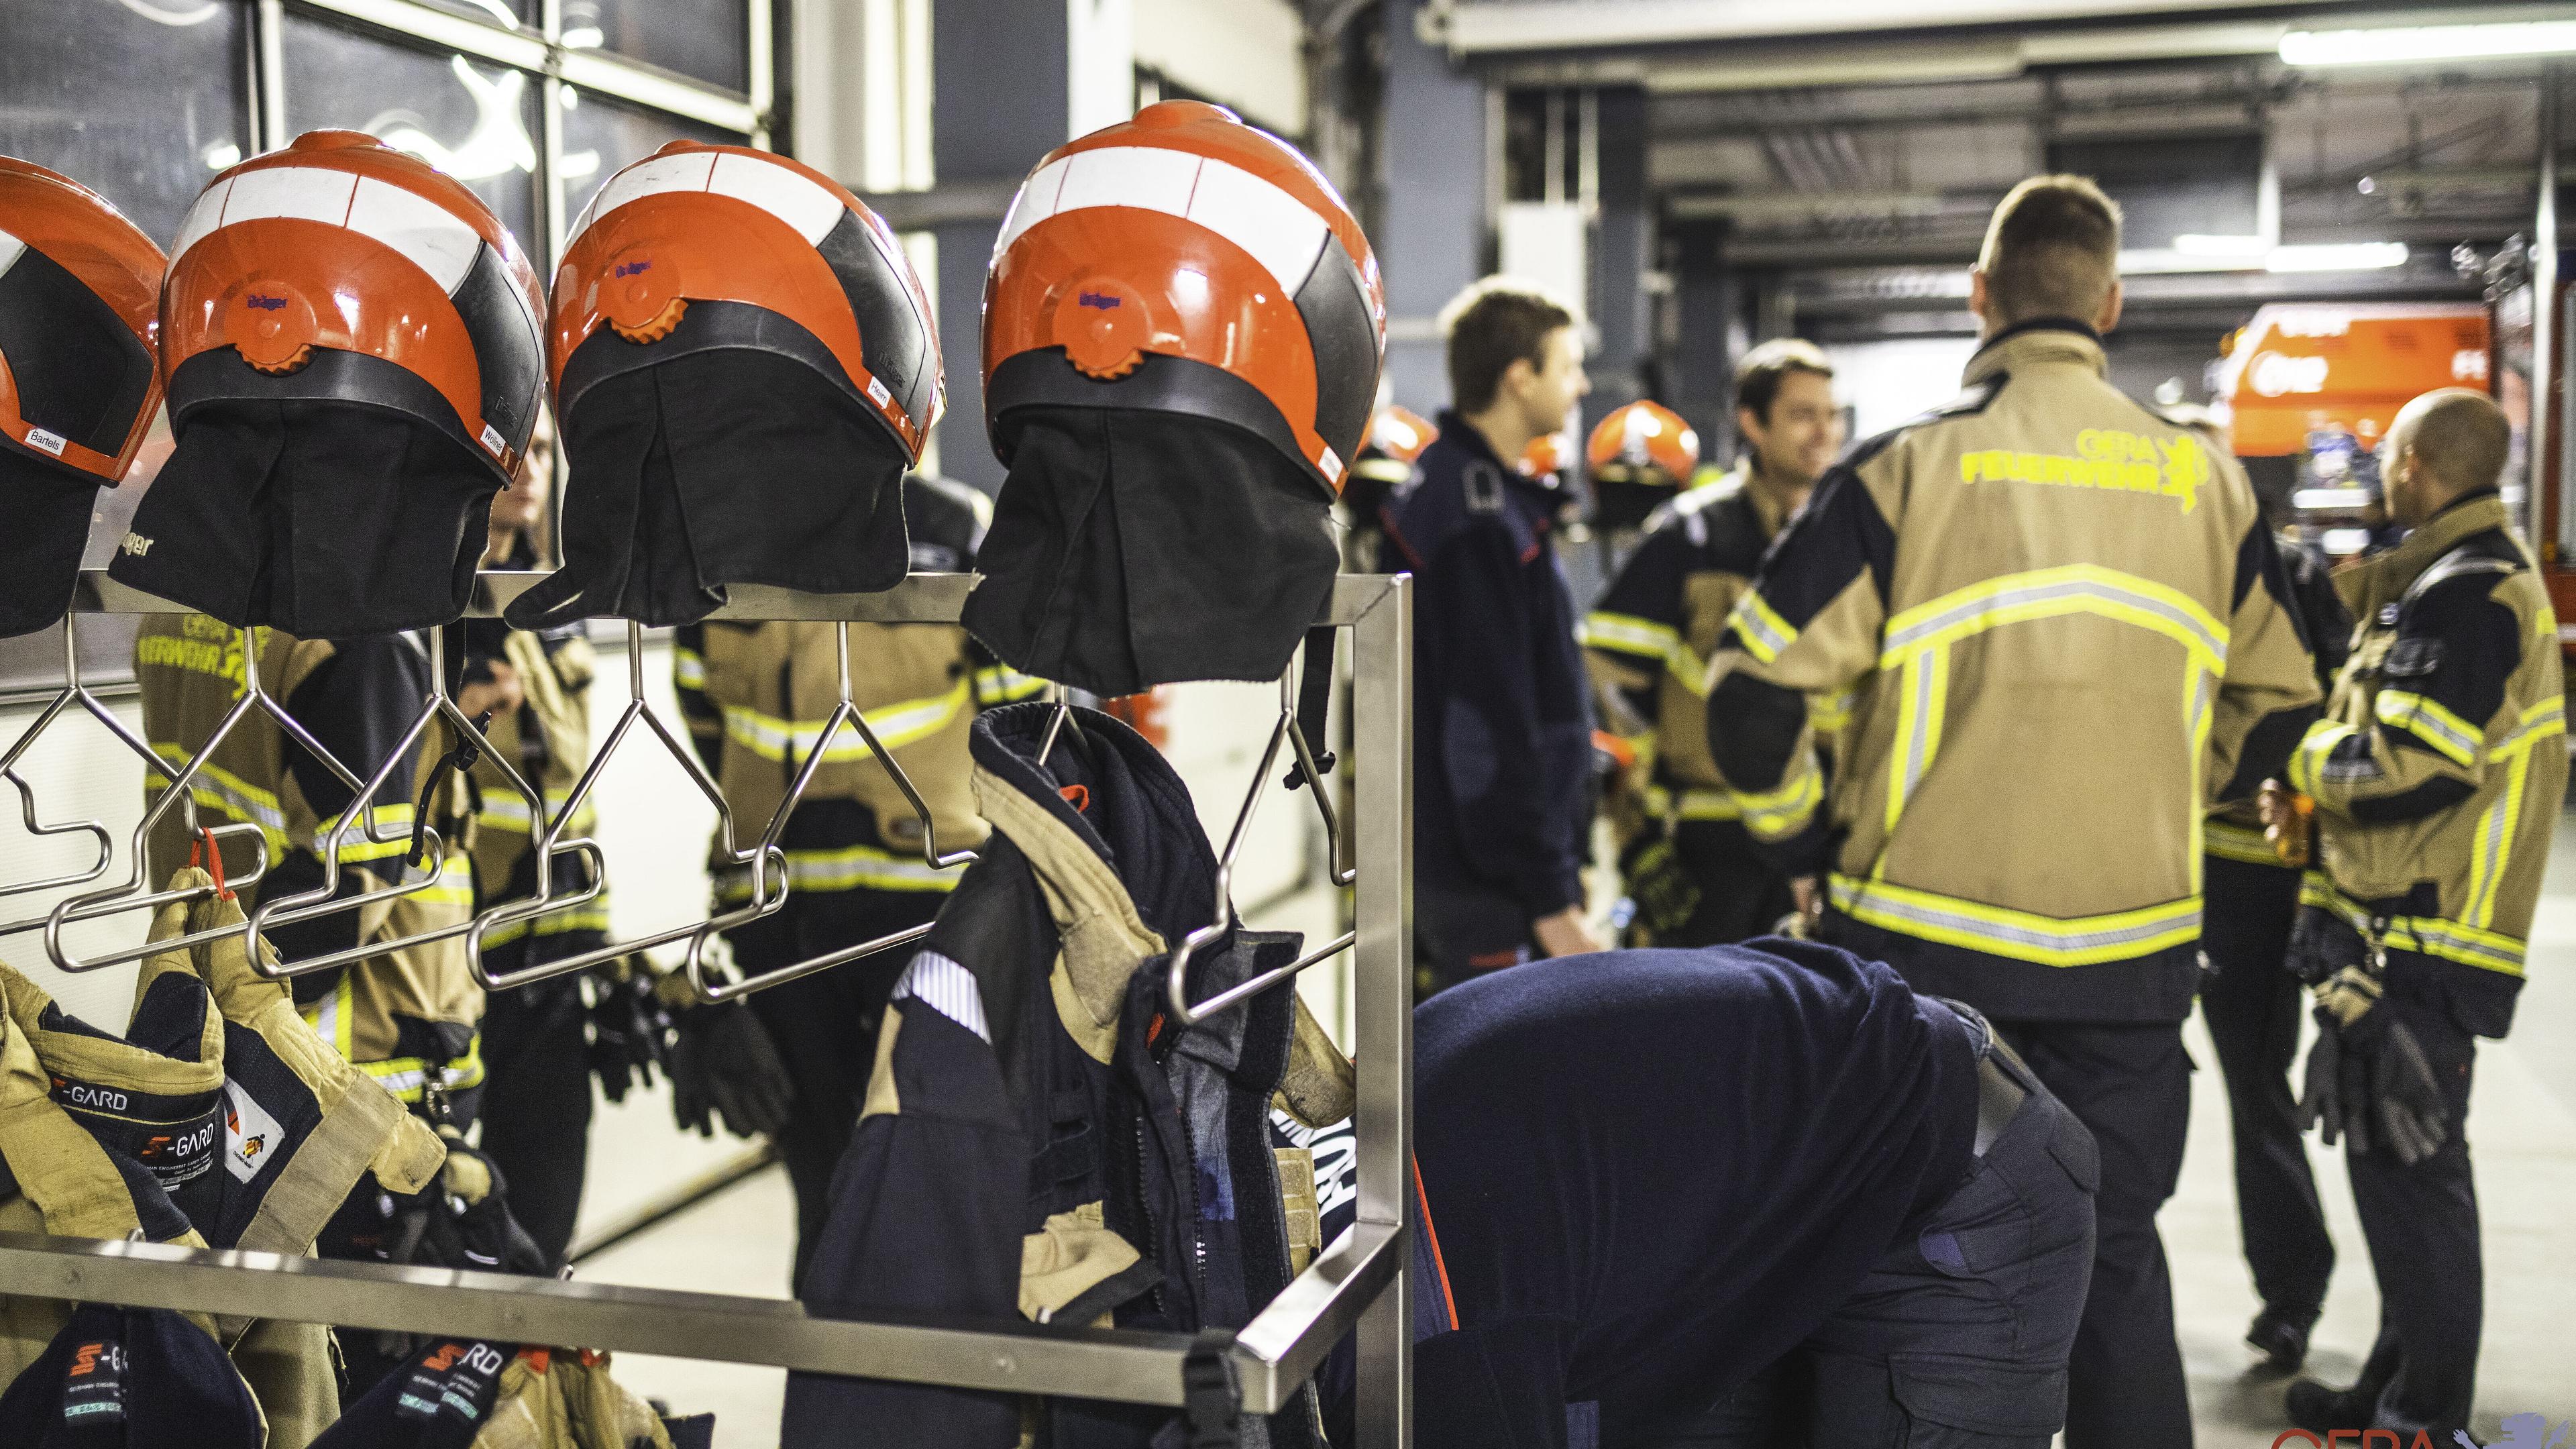 Im Vordergrund hängen an einem Ausrüstungsständer mehrere Feuerwehrhelme und -uniformen, im Hintergrund steht eine Gruppe Feuerwehrleute.